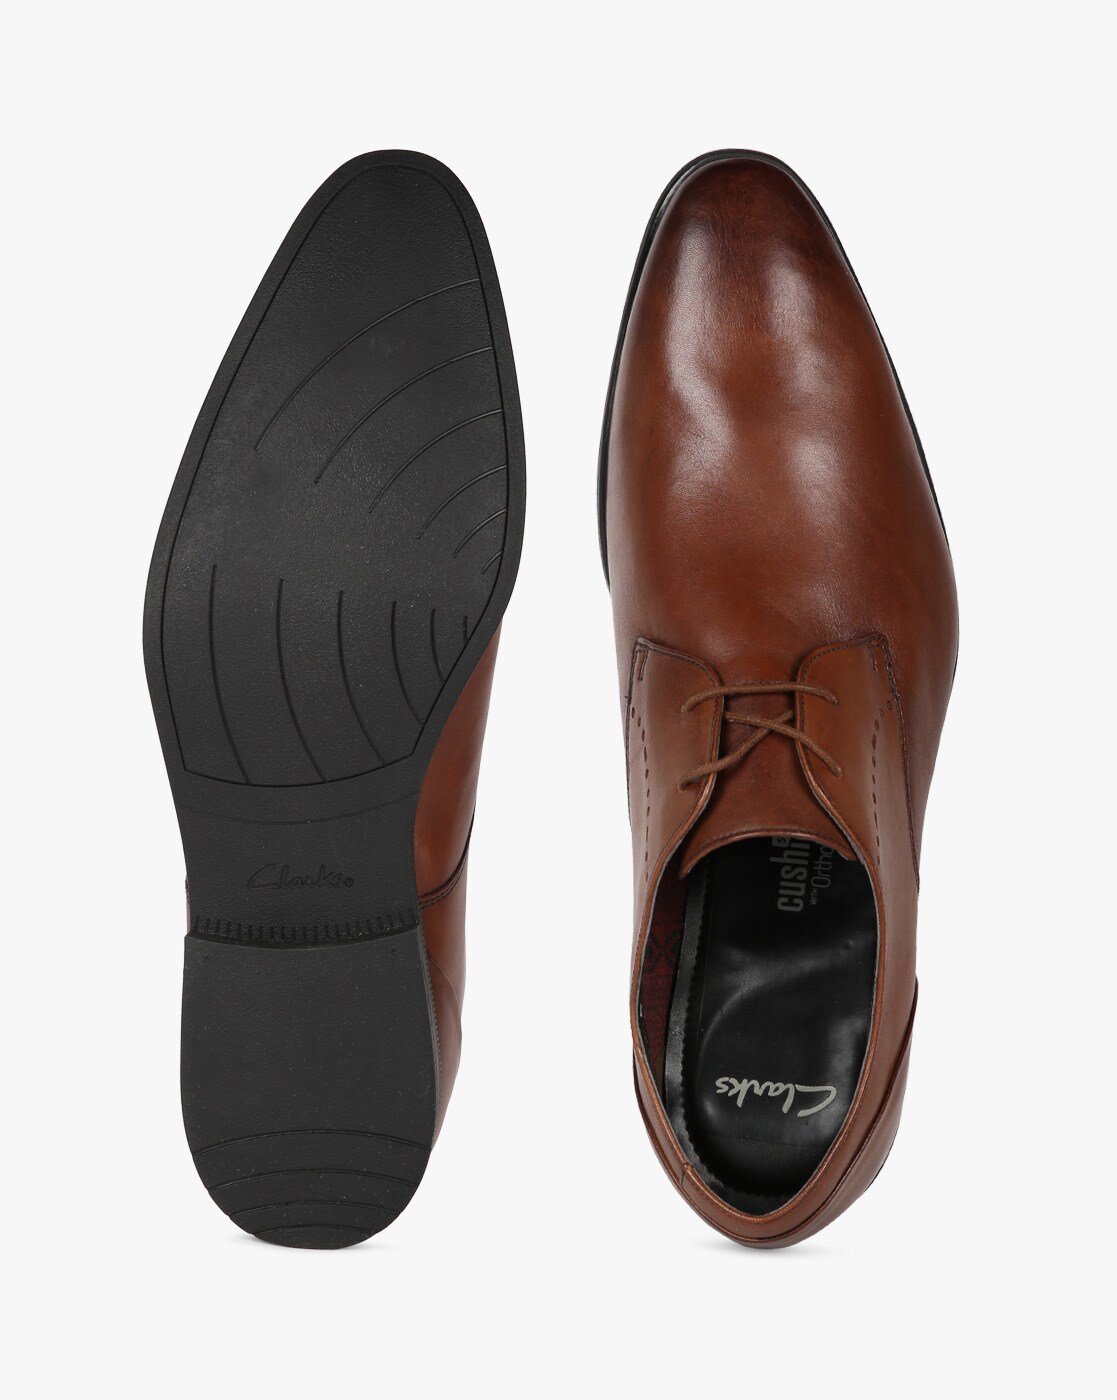 juego necesidad Golpe fuerte Buy Tan Brown Formal Shoes for Men by CLARKS Online | Ajio.com